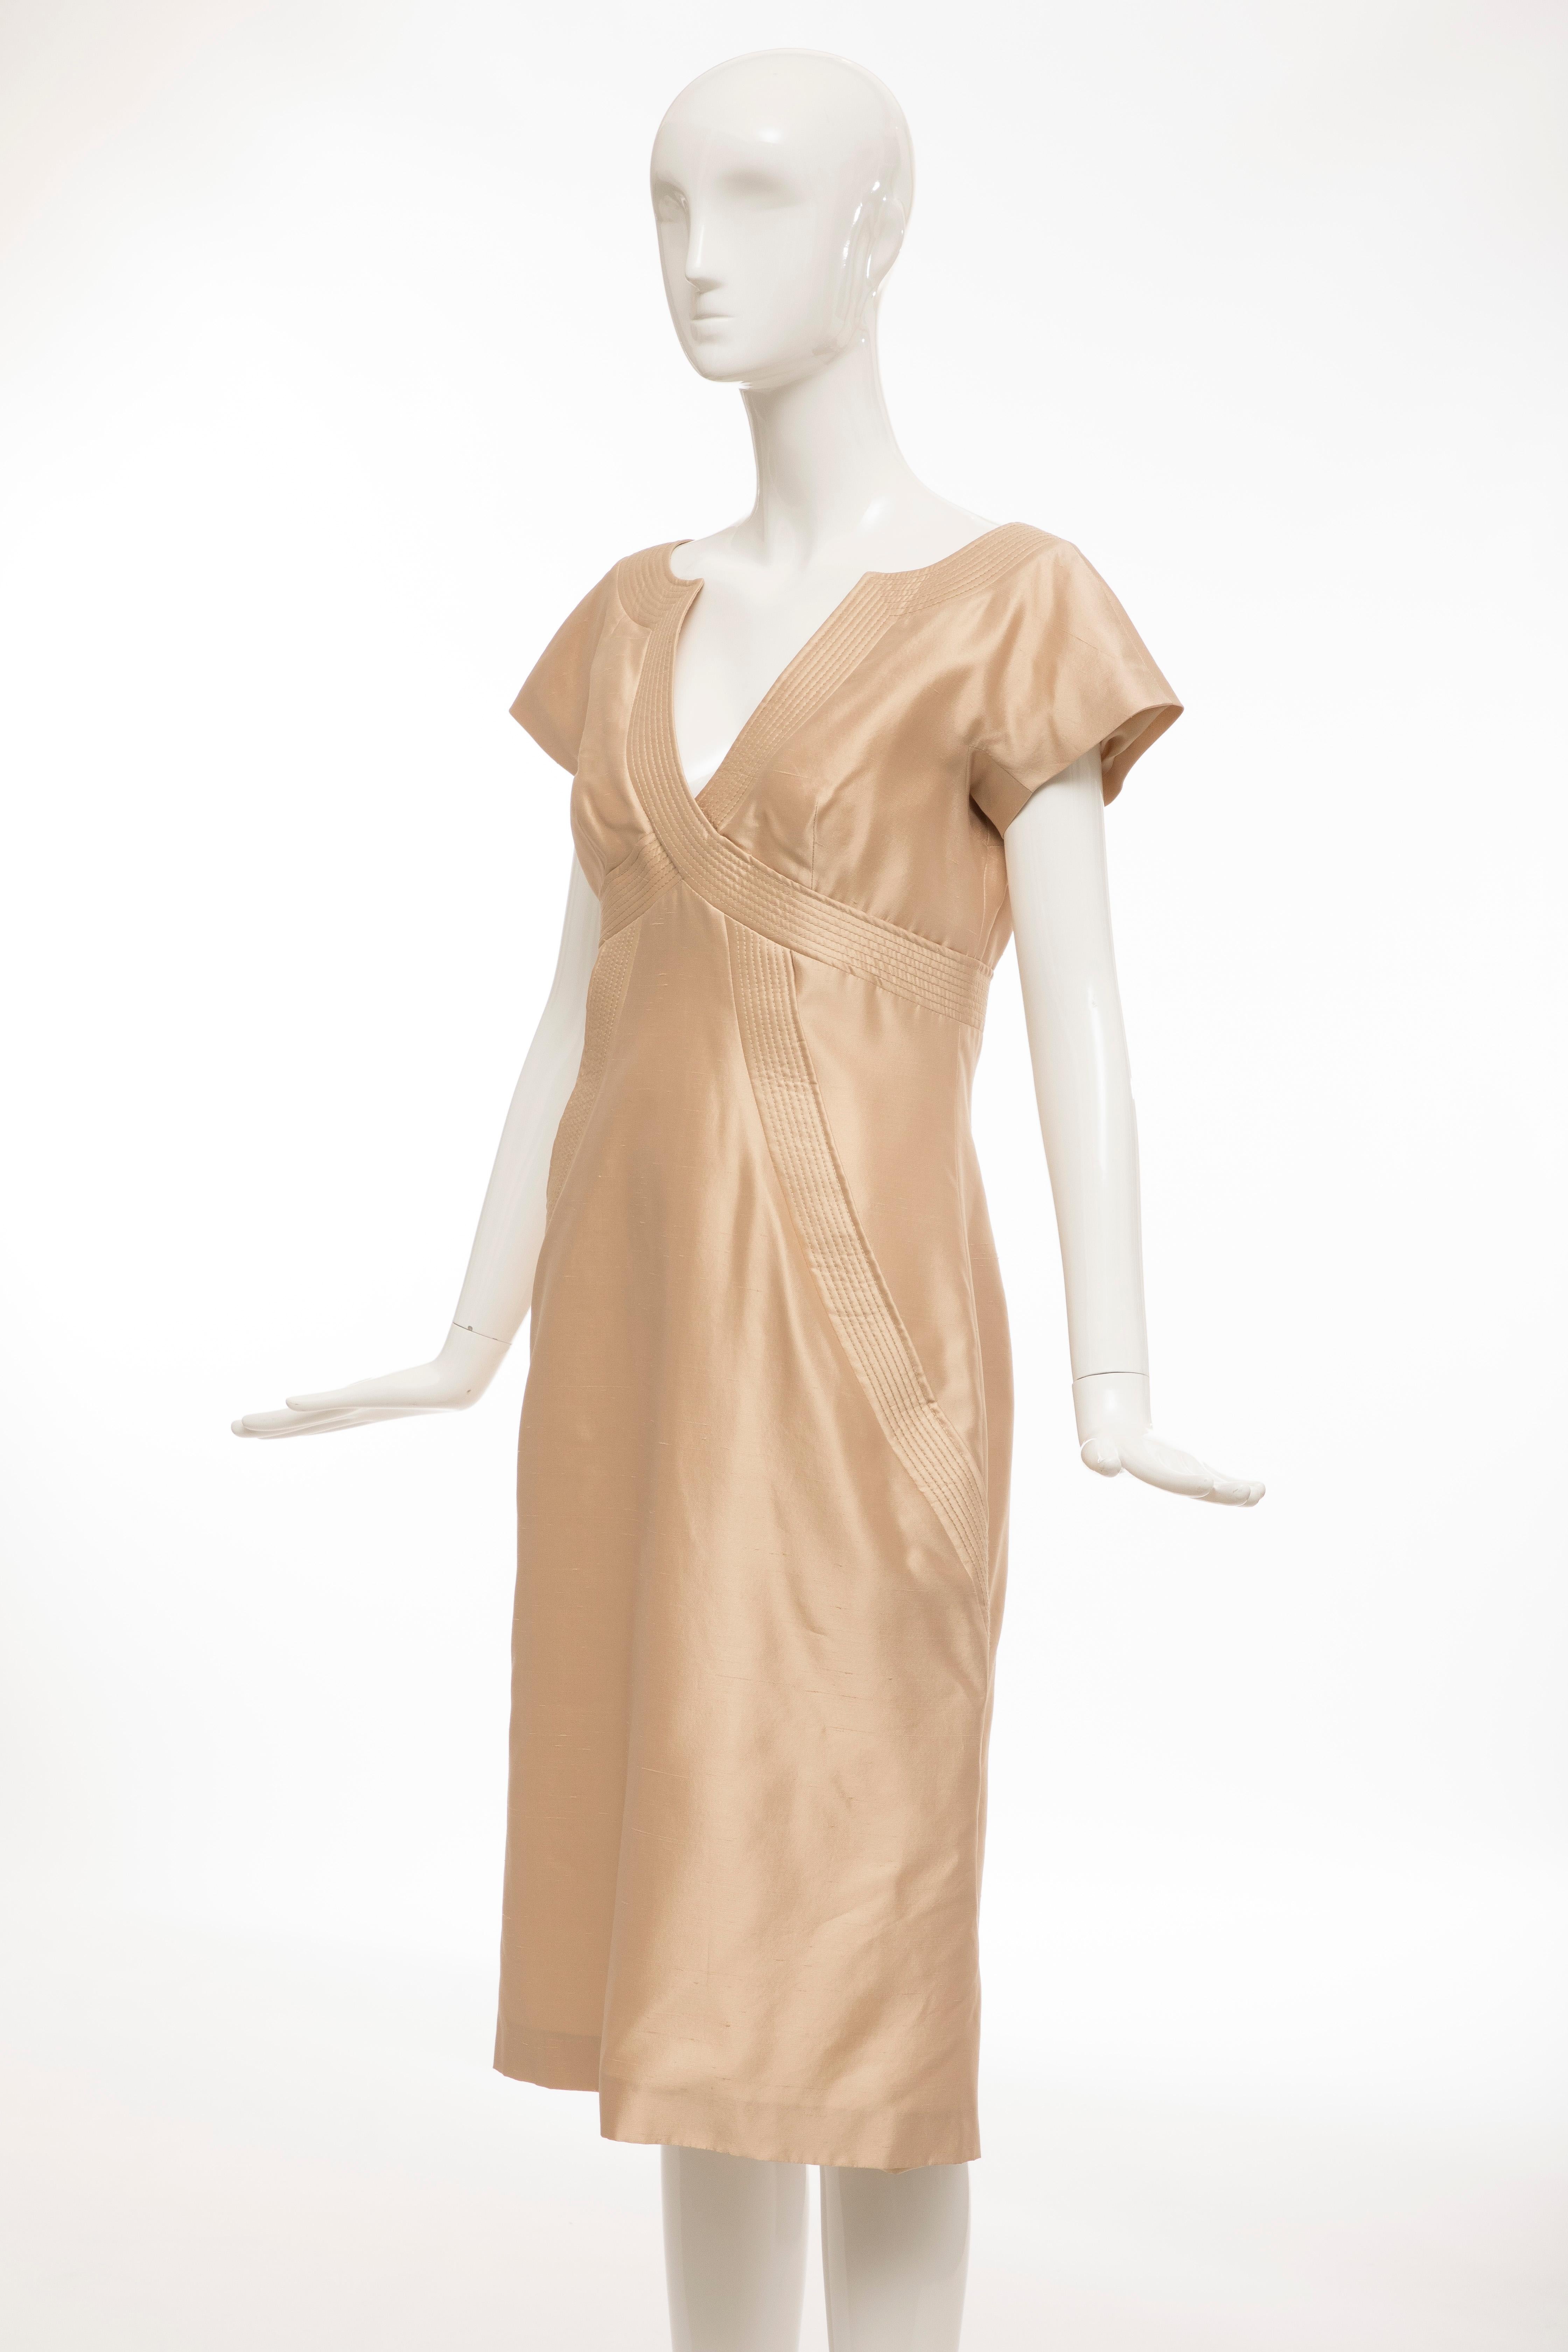 Alexander McQueen Silk Evening Dress, Spring 2006 For Sale 2